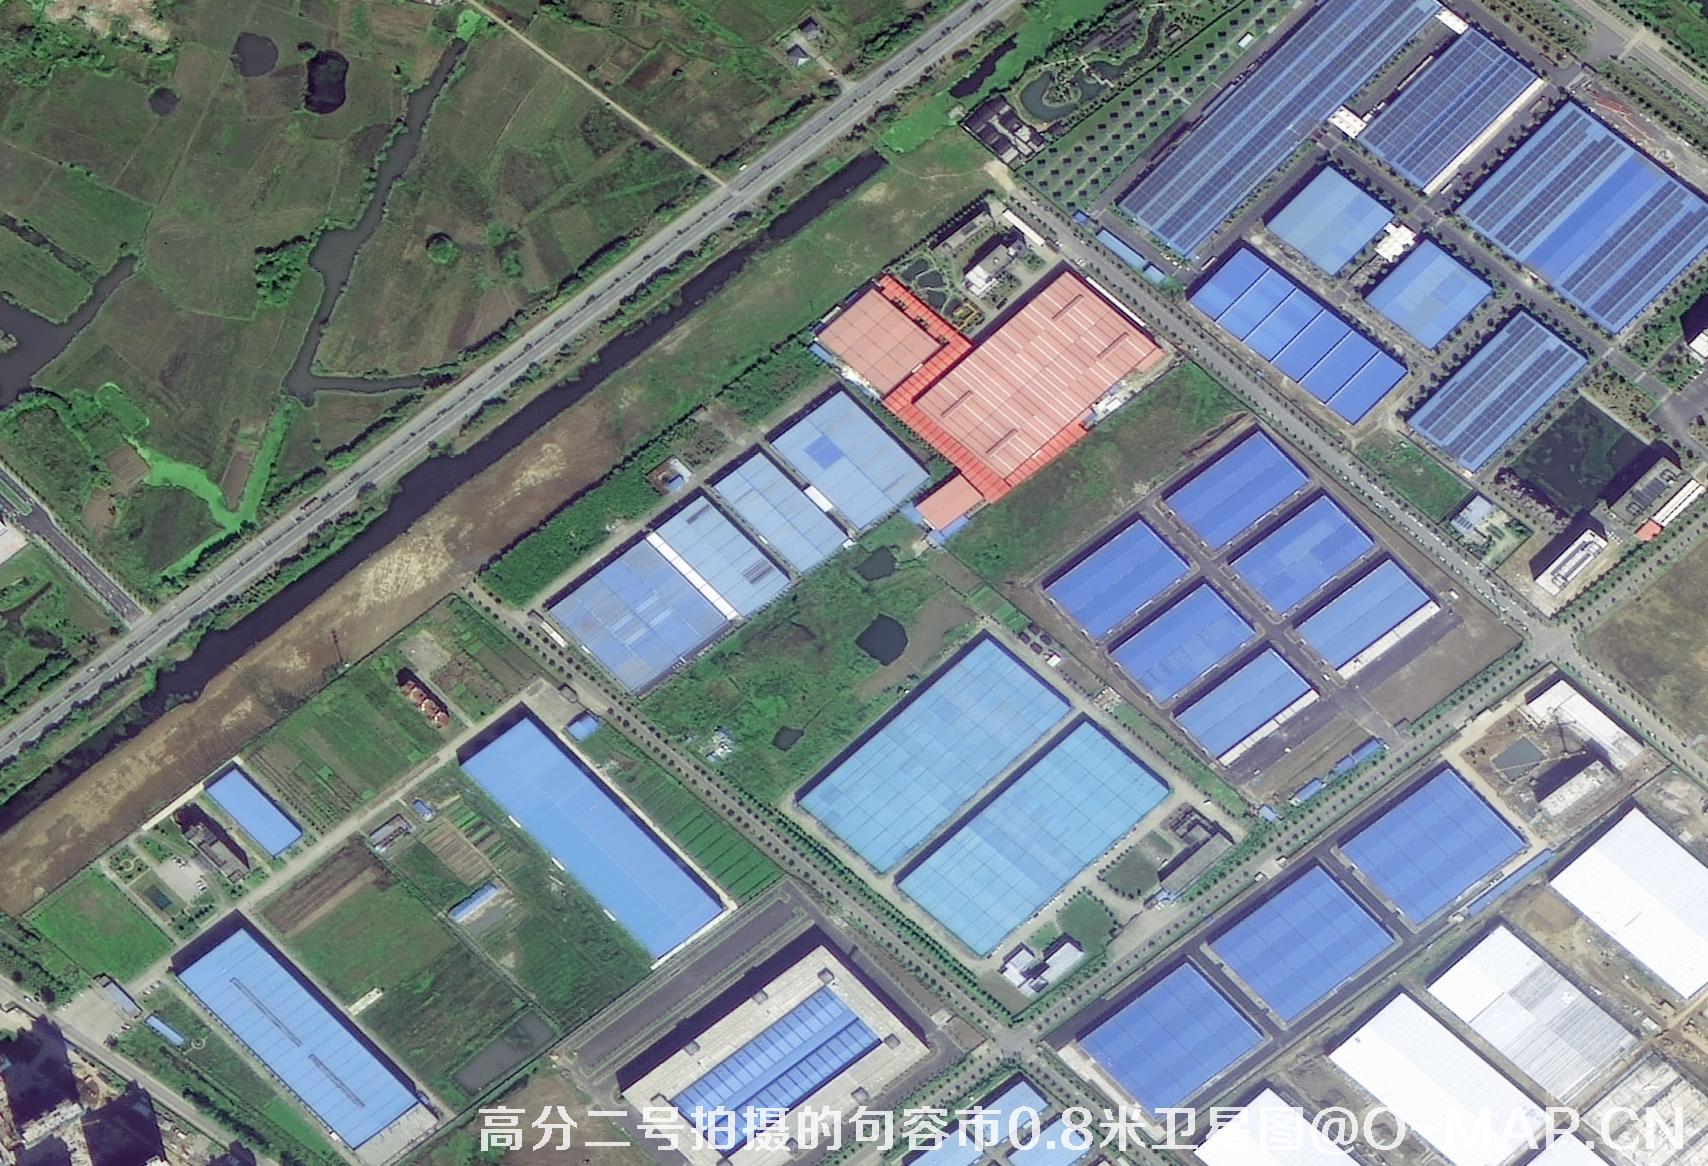 高分二号拍摄的江苏省句容市0.8米卫星图